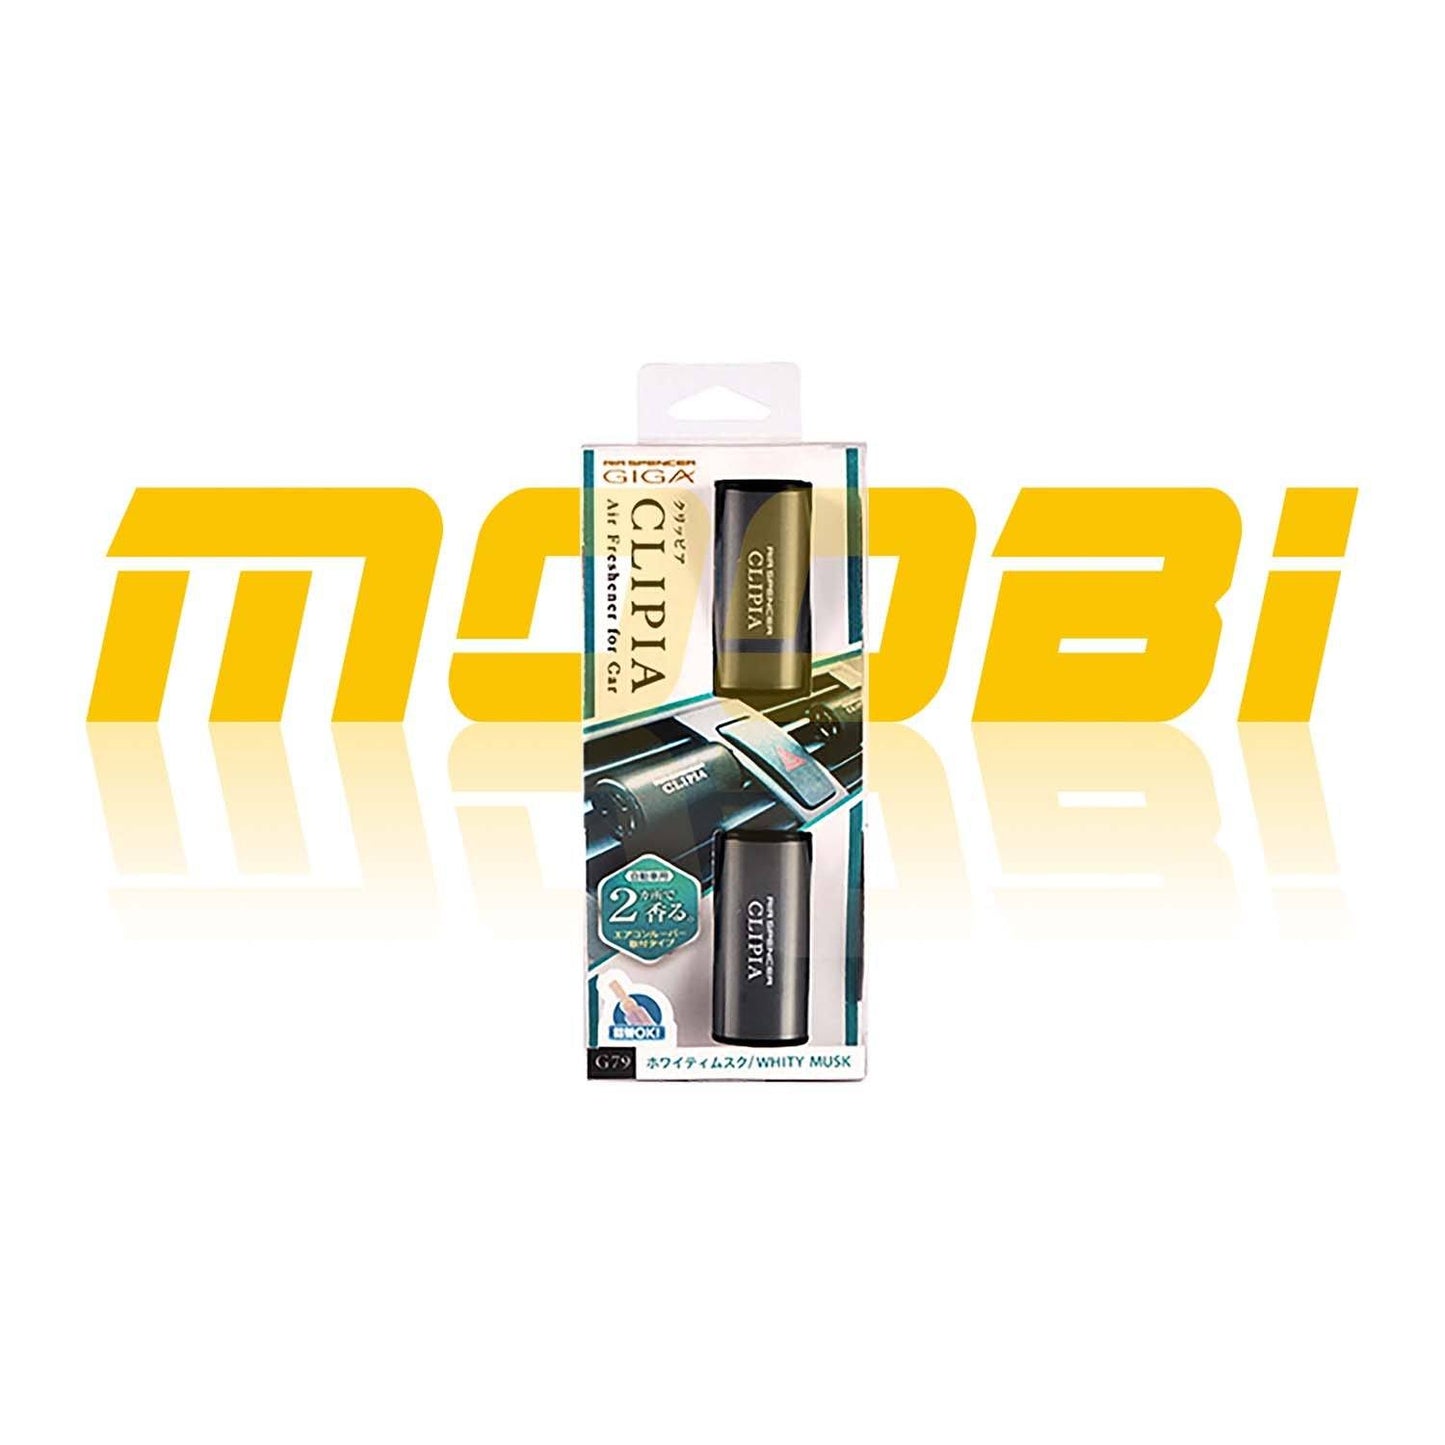 Giga Clip 風口香座 Air Freshener  MOOBI 香港網上汽車專門店